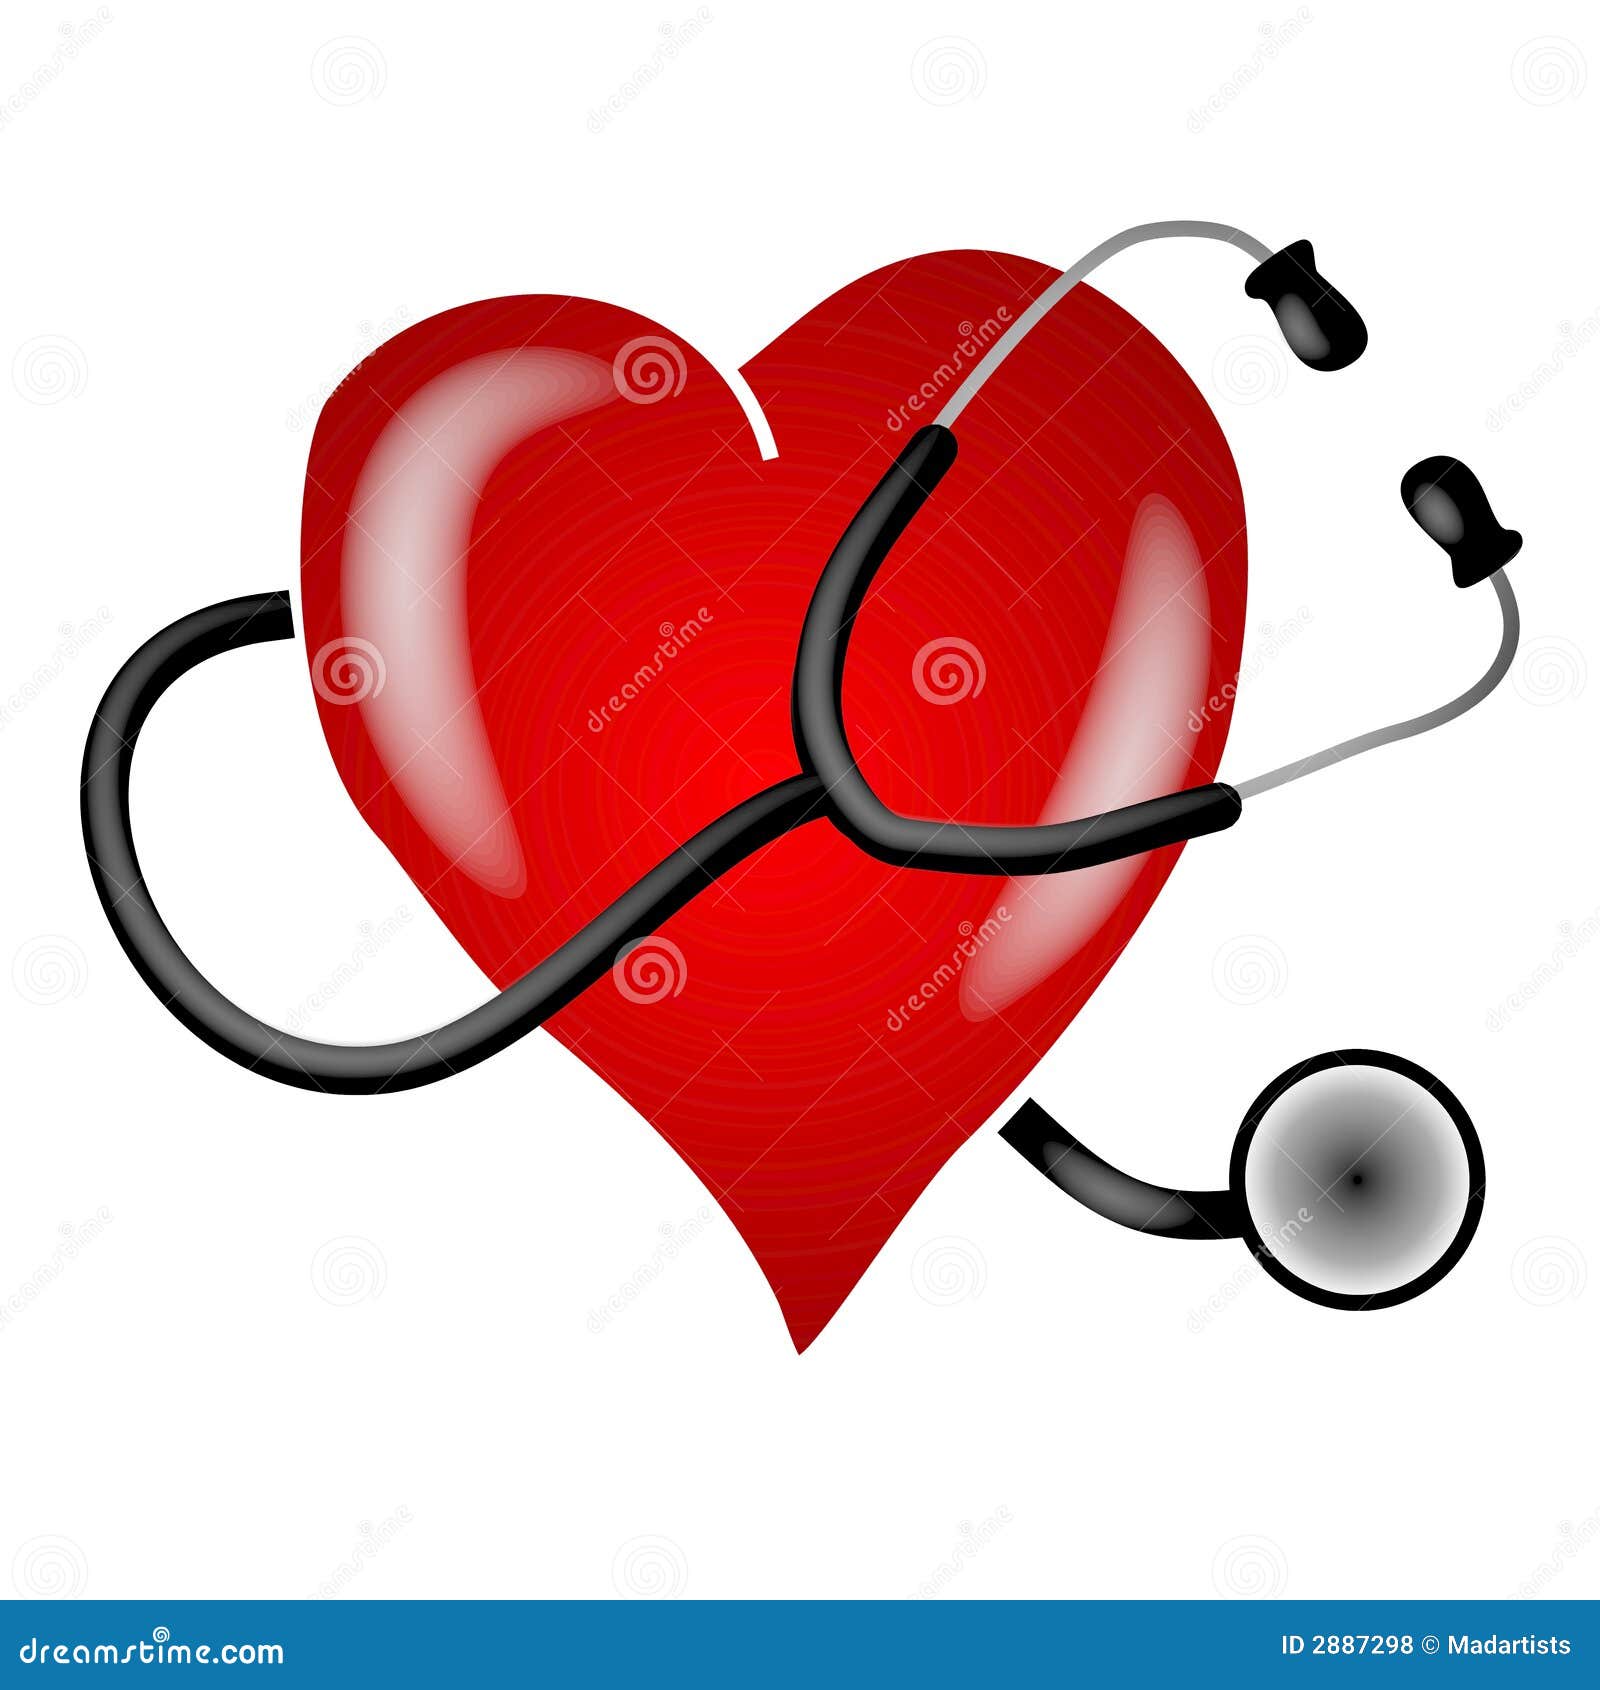 stethoscope heart clip art